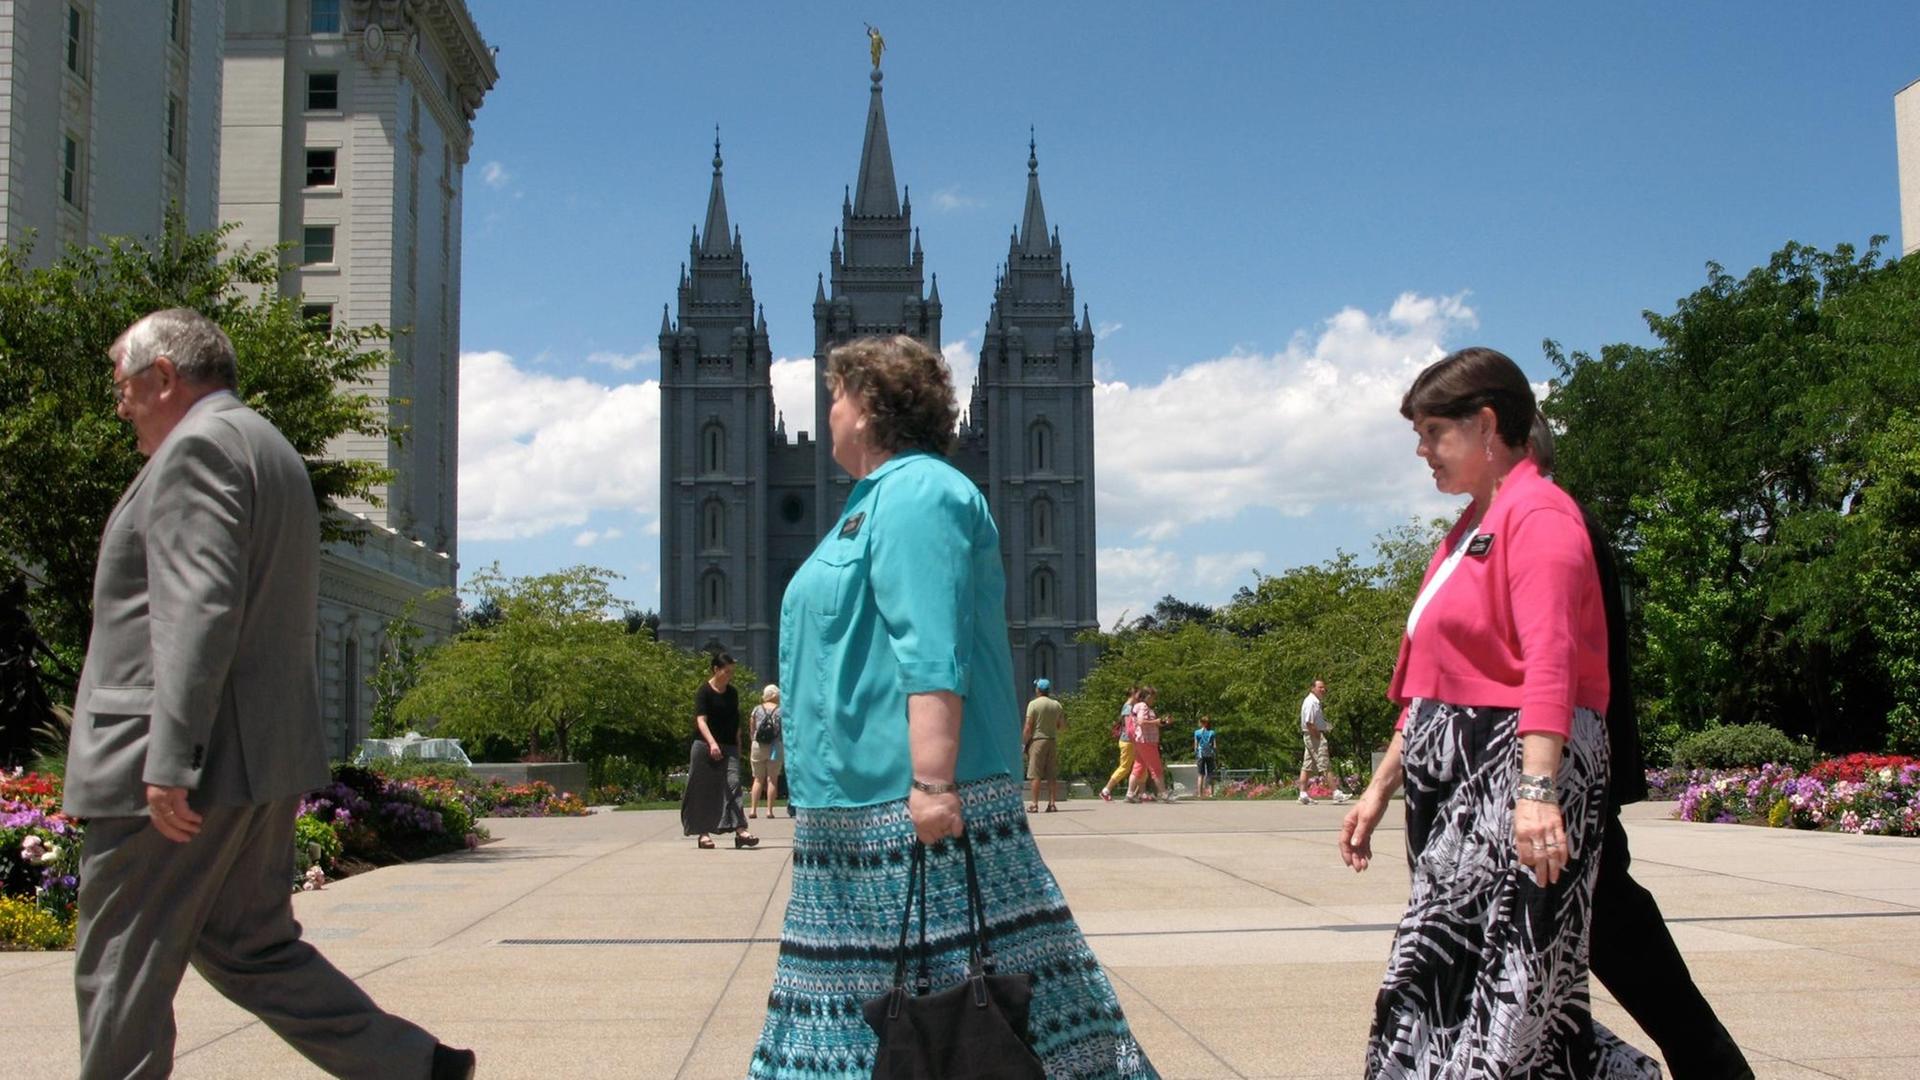 Mormonenfrauen gehen über den Temple Square in Salt Lake City, im Hintergrund der sechstürmige Mormonen-Tempel. Mehr als die Hälfte der Einwohner des US-Staates Utah sind Mormonen